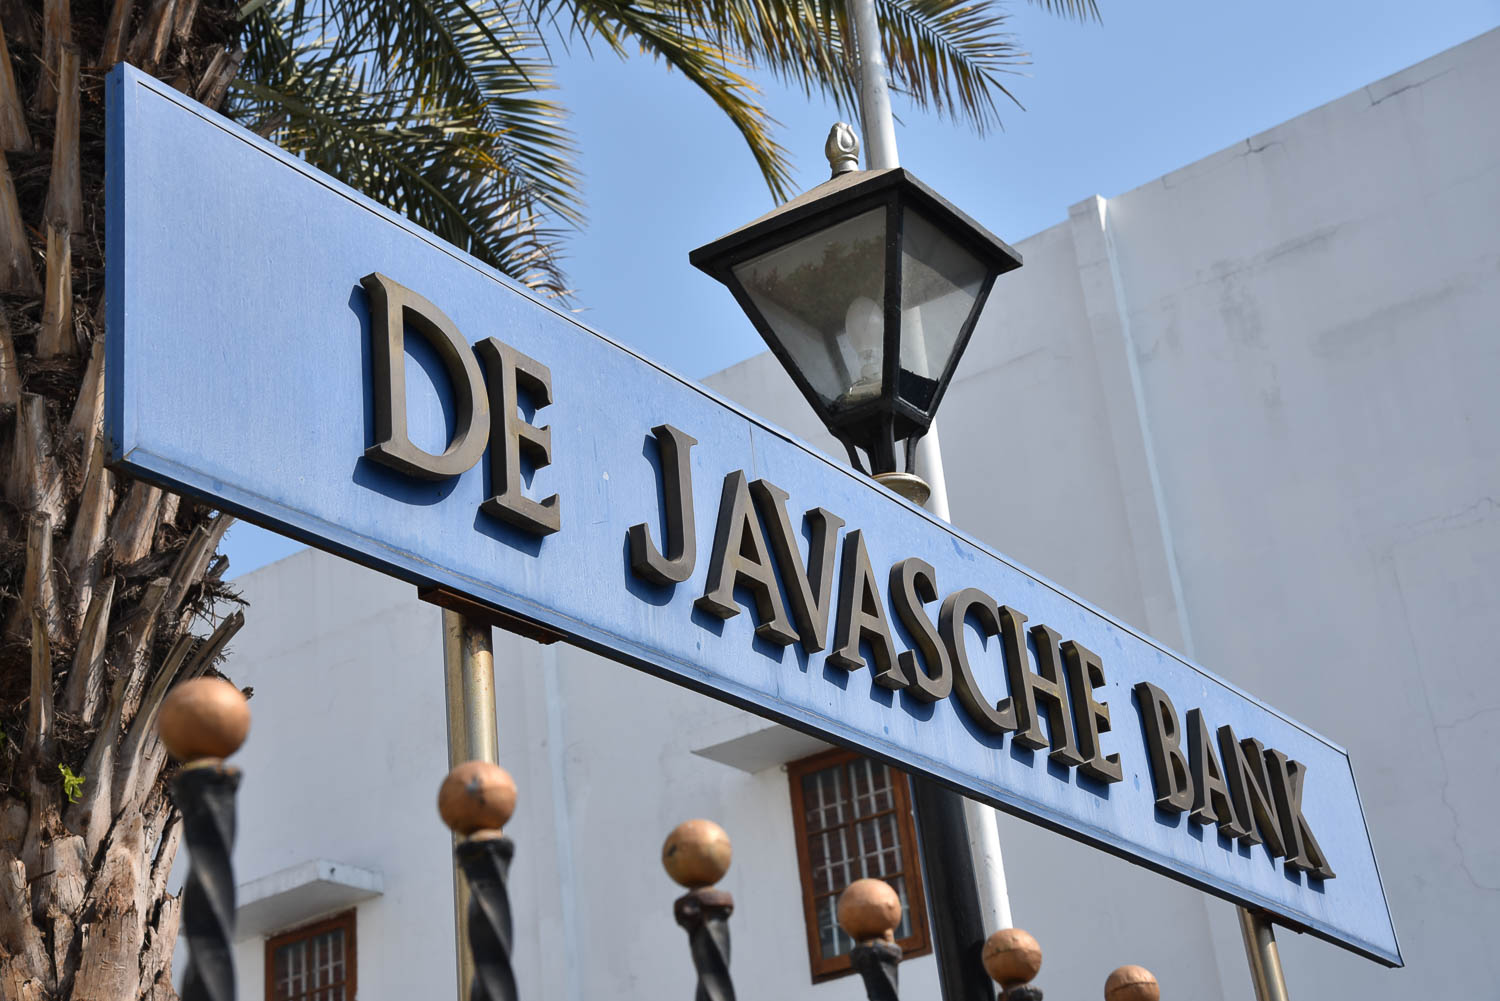 De Javasche Bank di Surabaya yang kini menjadi Museum Bank Indonesia.